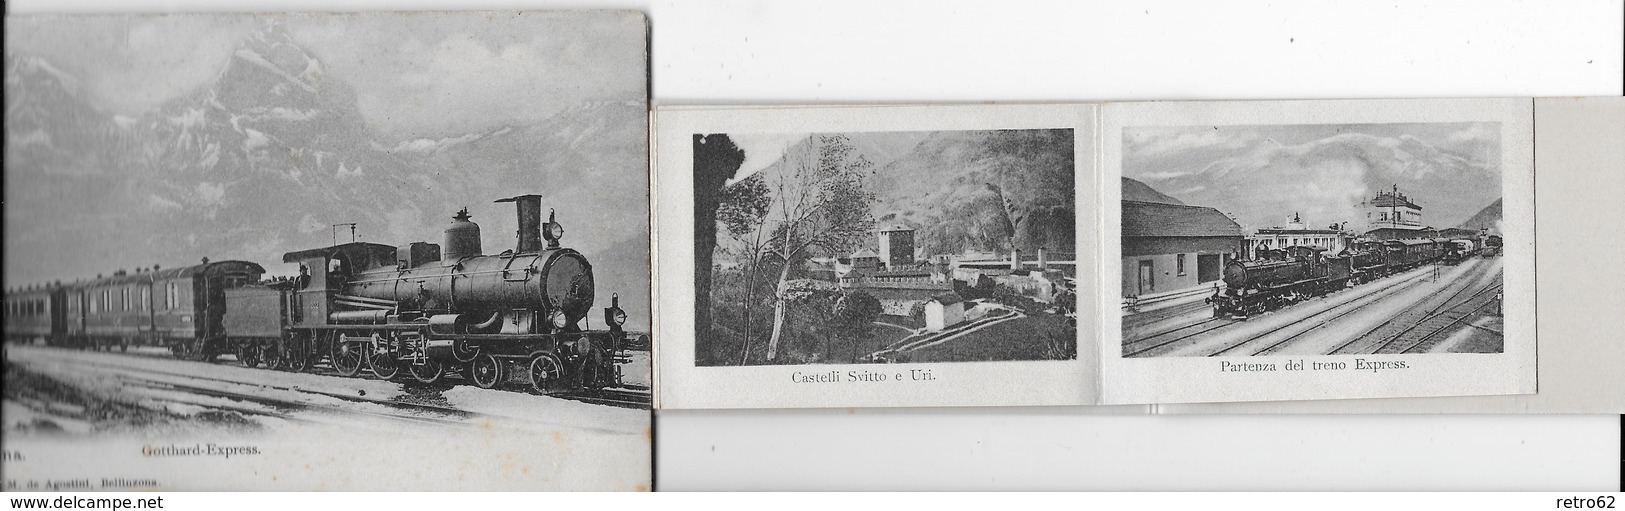 GOTTHARD-EXPRESS → con 12 foto dal Ticino, ca.1900   ►molto raramente offerto◄